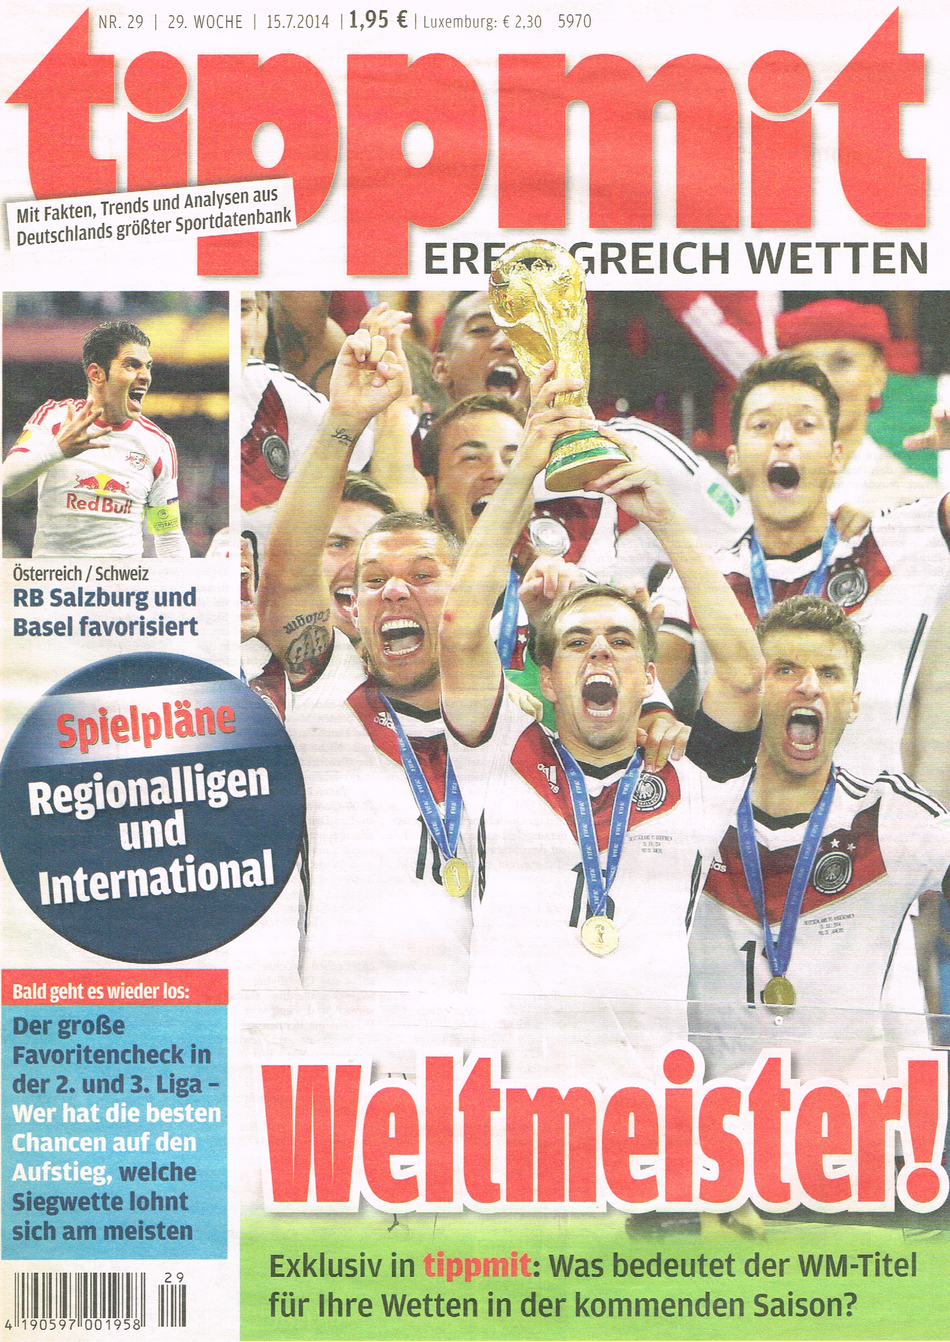 Titelbild der "tippmit"-Ausgabe 29/2014: Die deutsche Fußball-Nationalmannschaft jubelt und holt zum vierten Mal den WM-Pokal